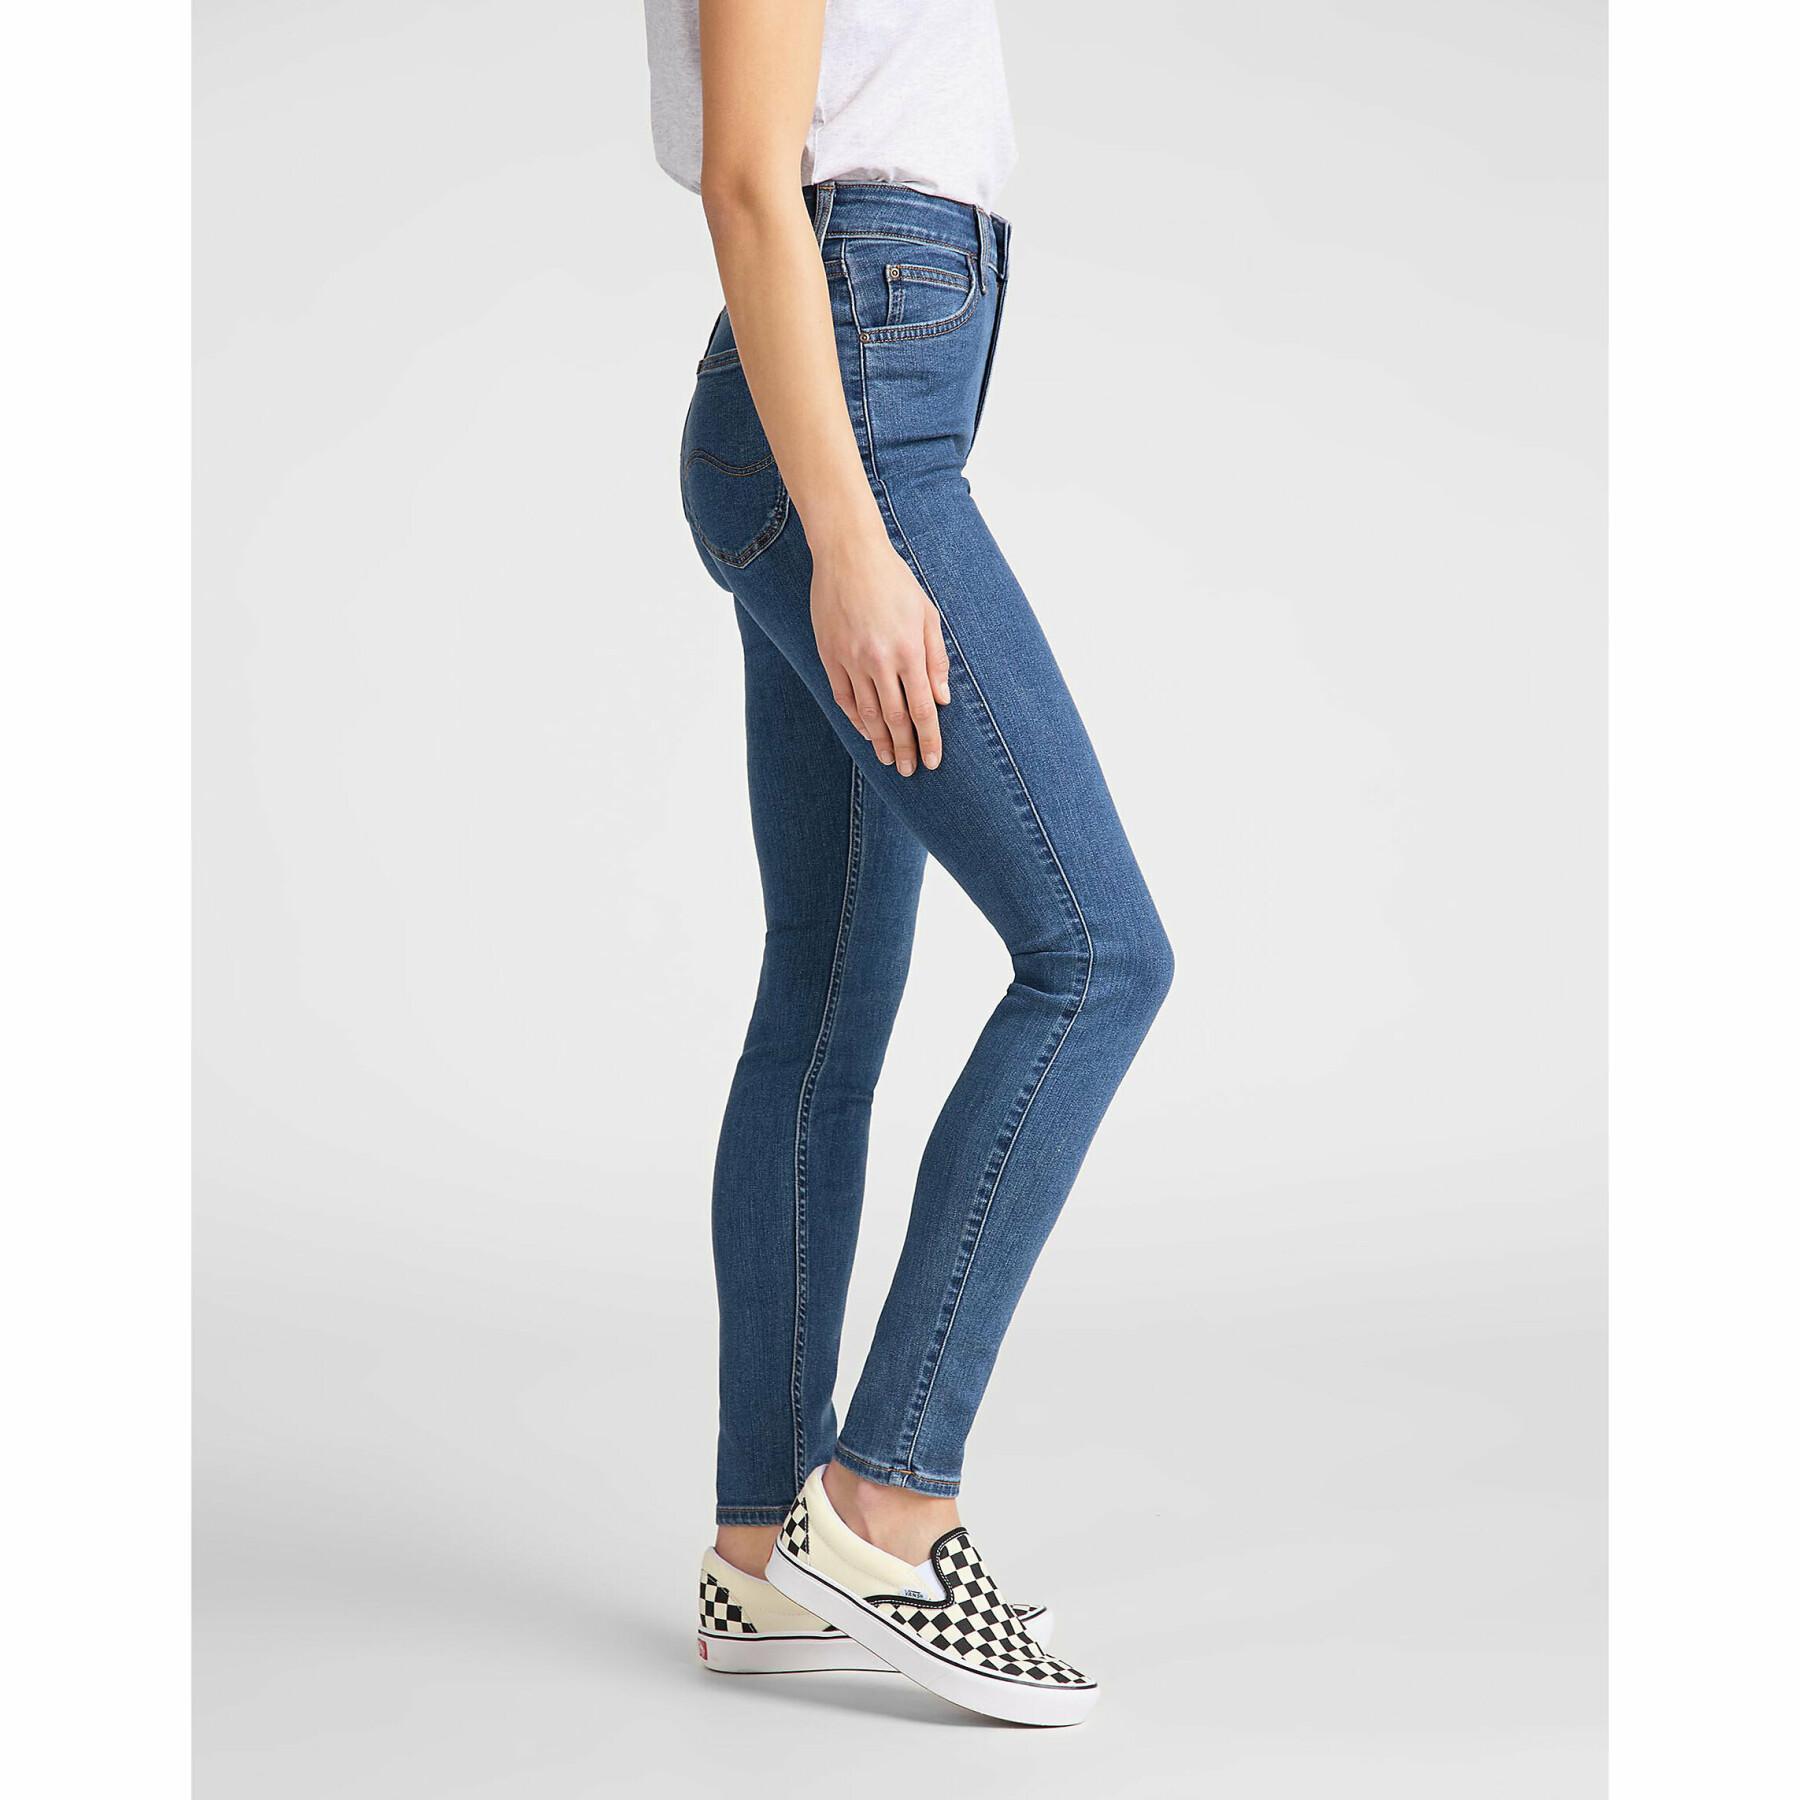 Women's jeans Lee Ivy